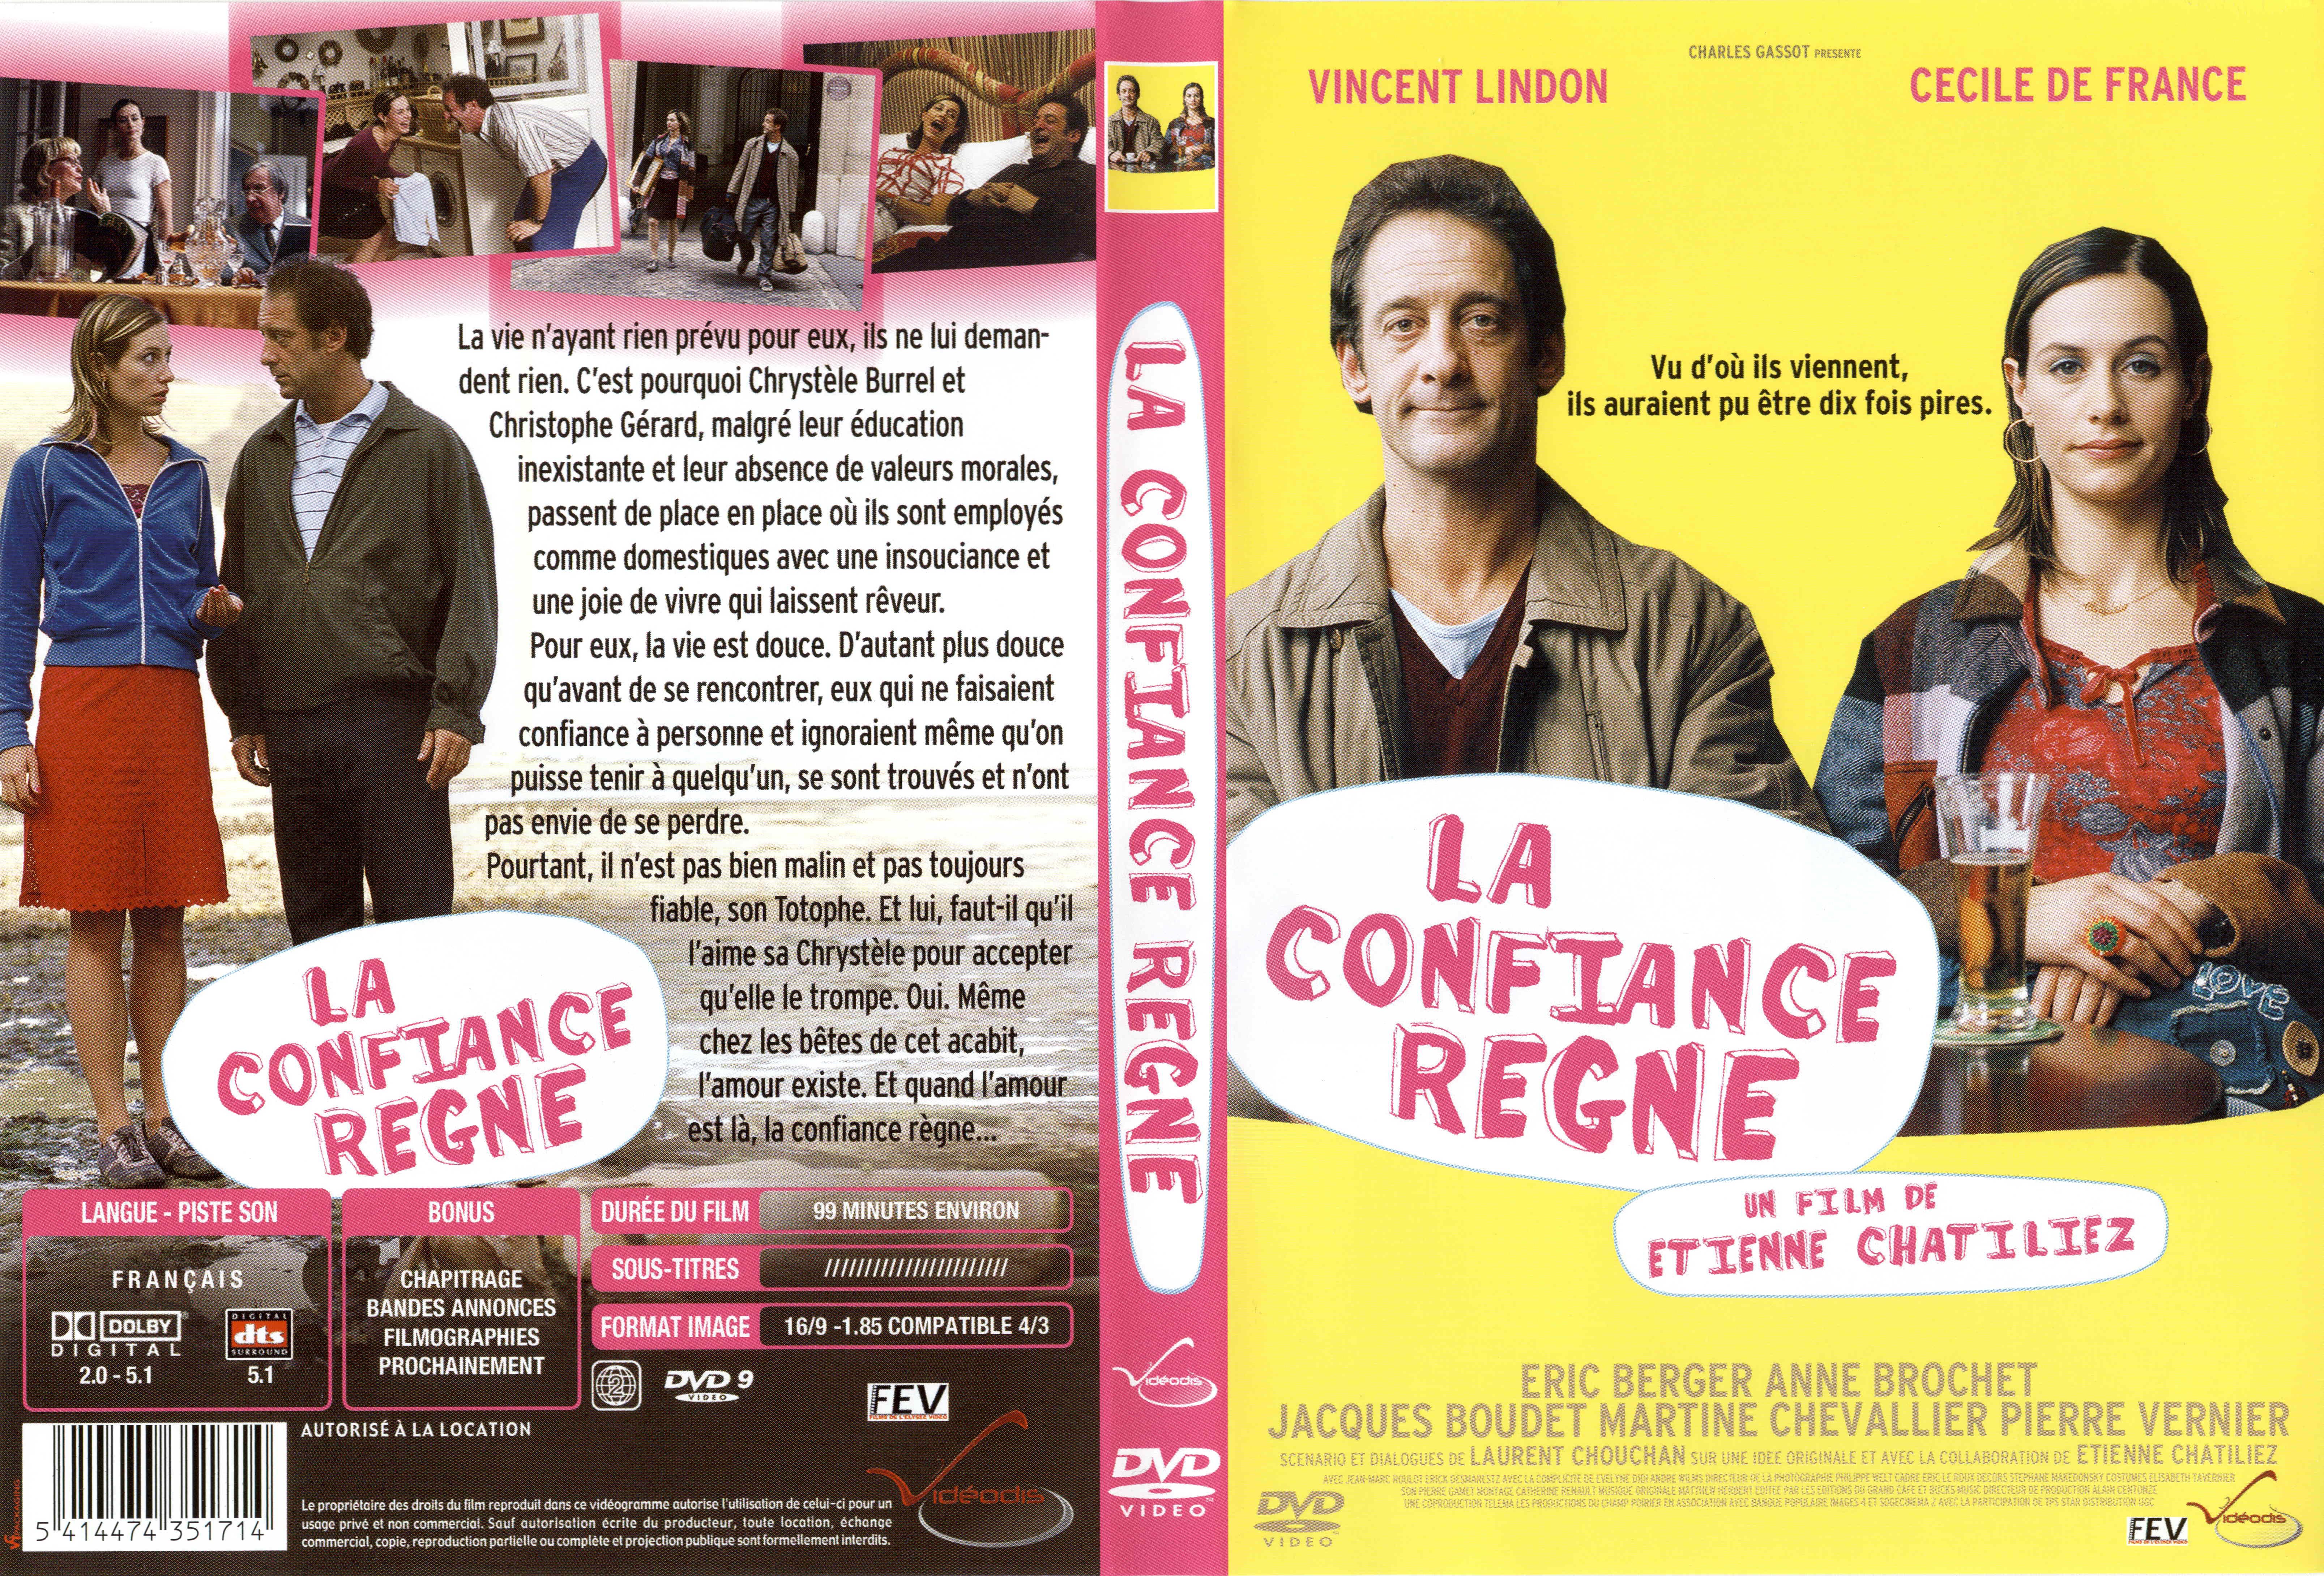 Jaquette DVD La confiance regne v3